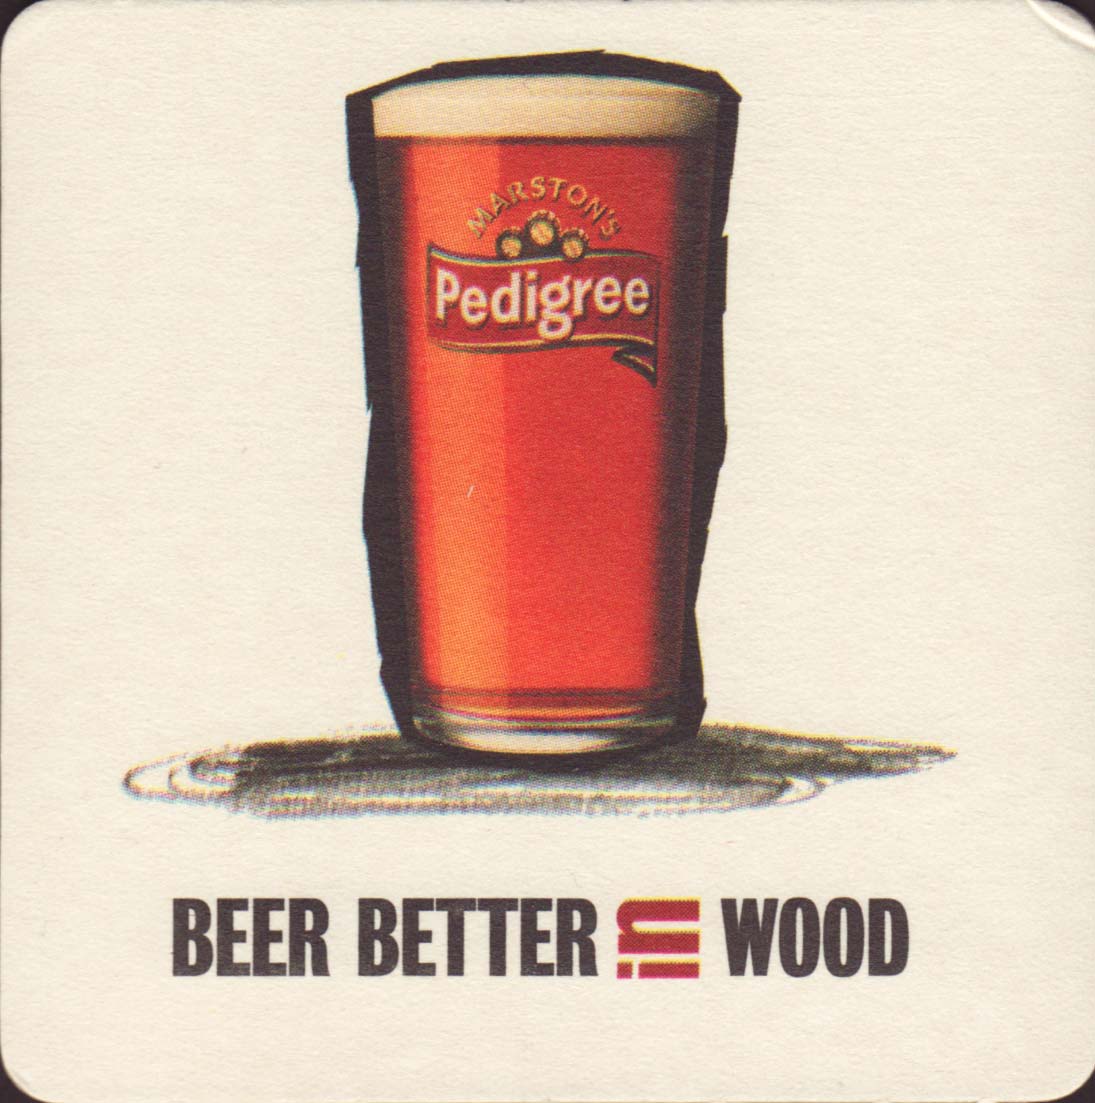 Better beer. Пиво Педигри. Марстонс Педигри. Пиво better. Английское пиво Педигри.